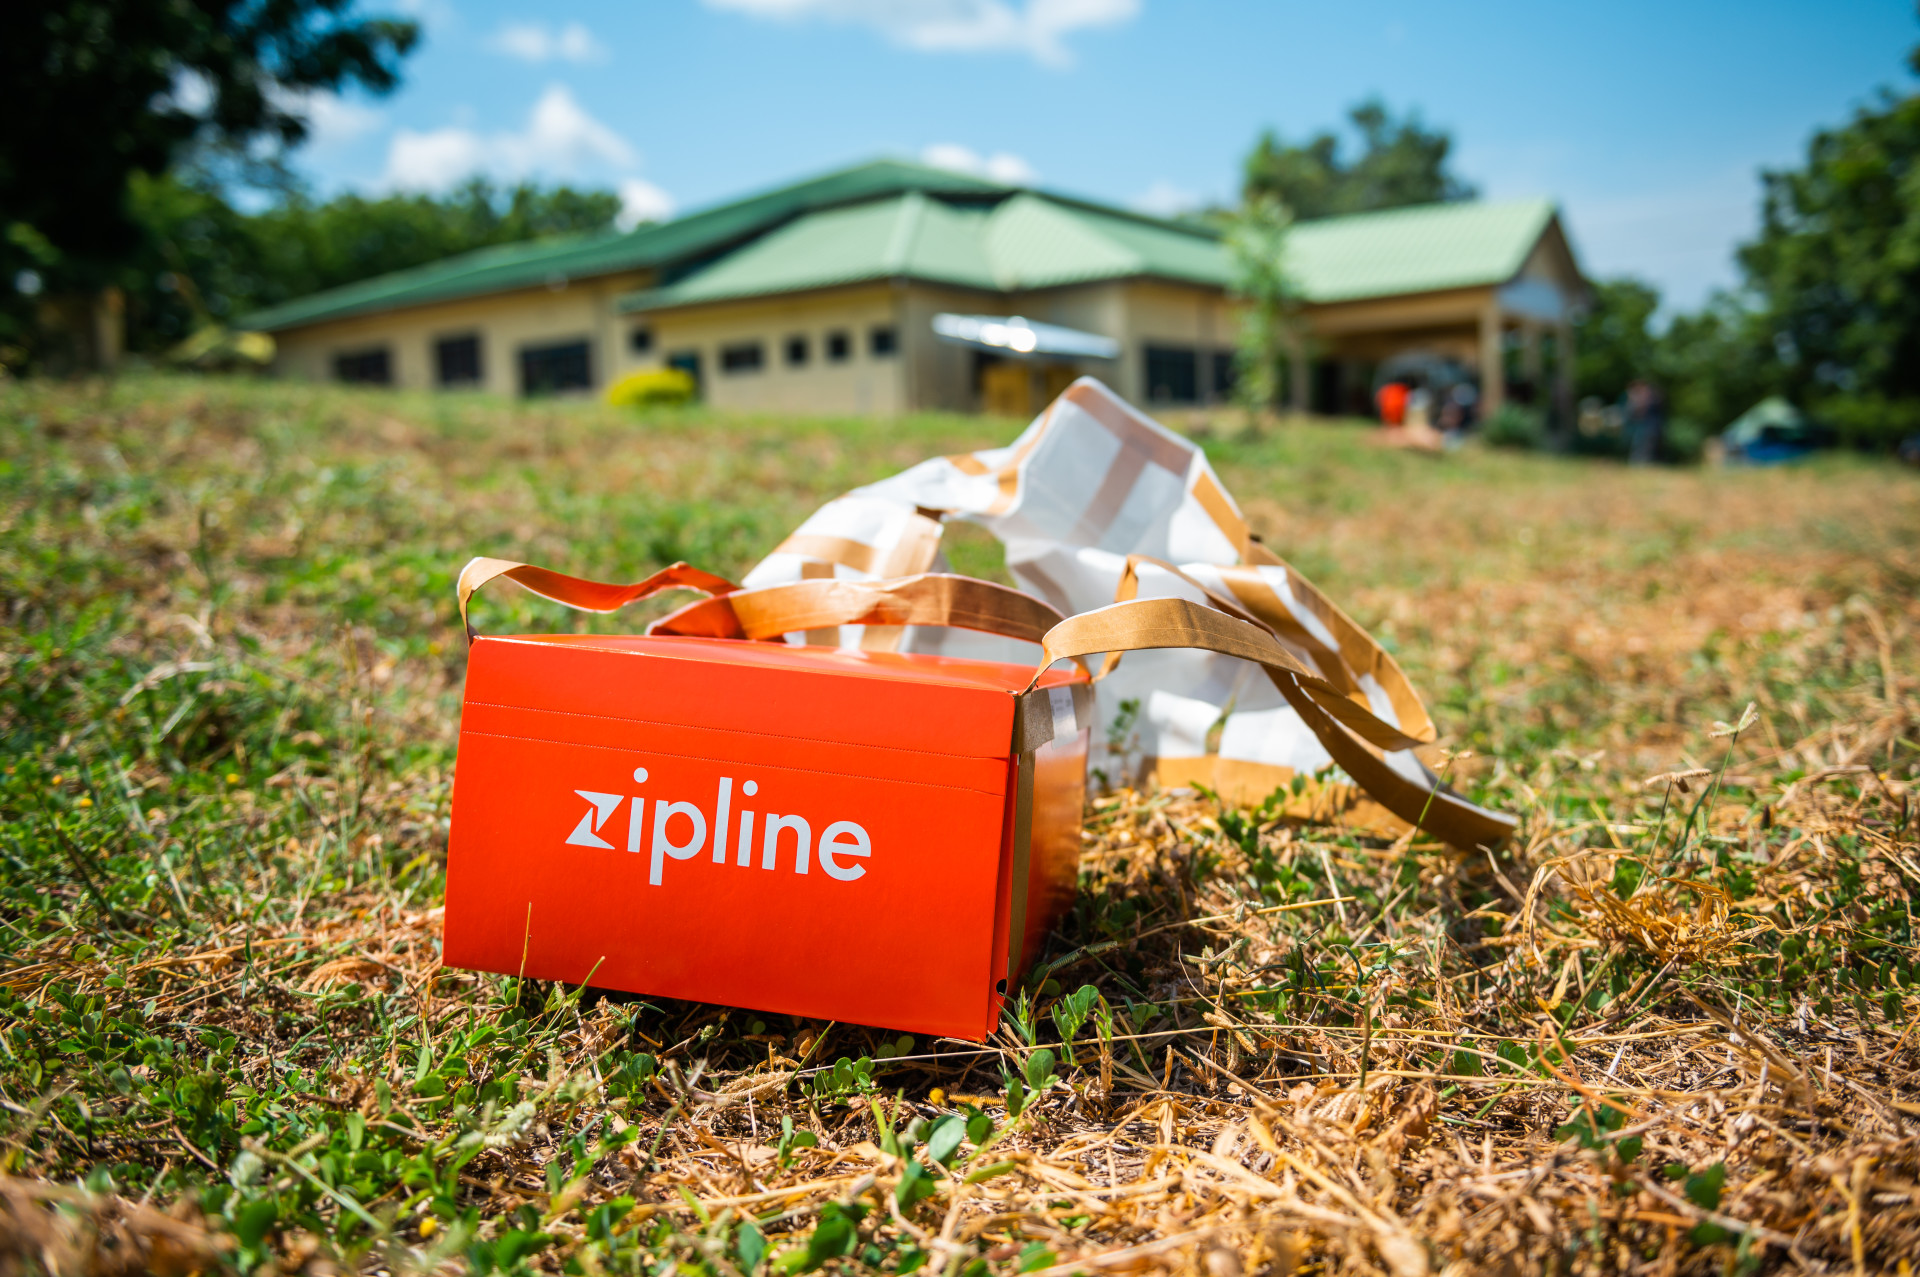 Zipline package delivered to medical center